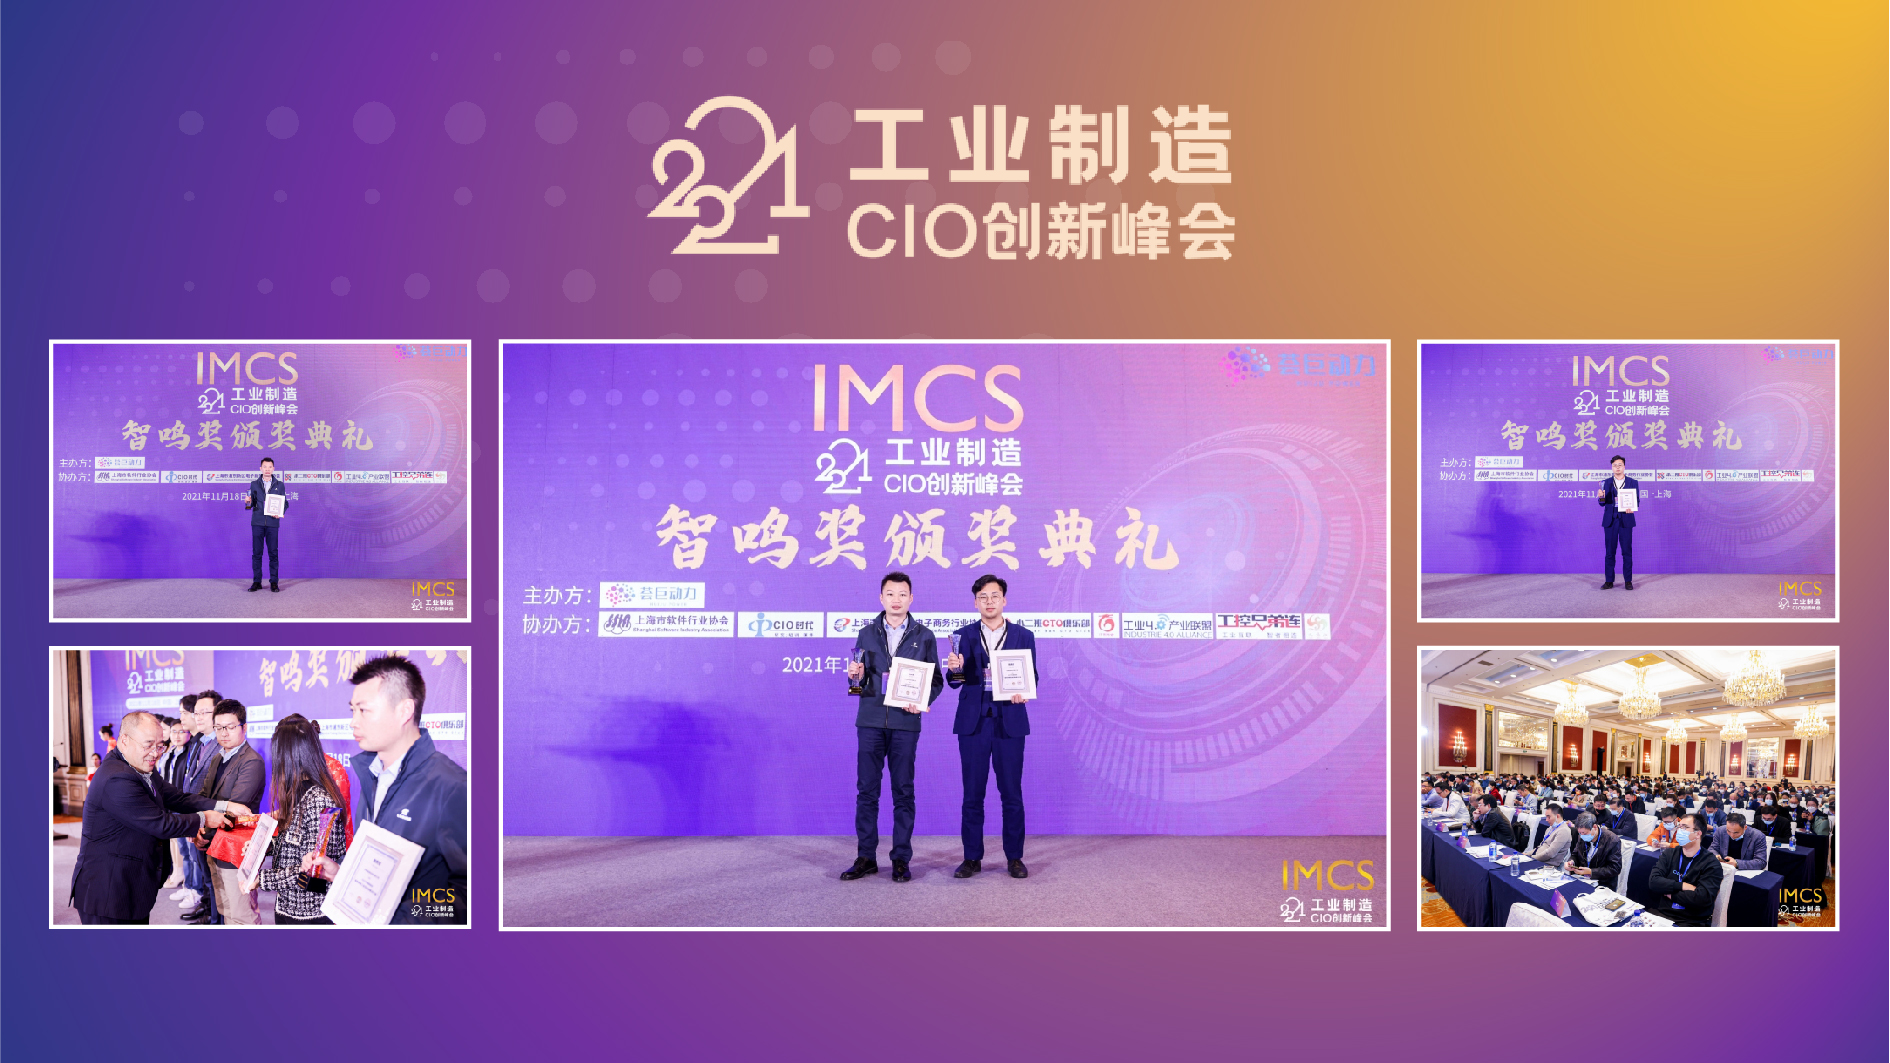 引领数字工业变革 橙犀工业科技荣获2021工业制造CIO创新峰会2项大奖(图2)